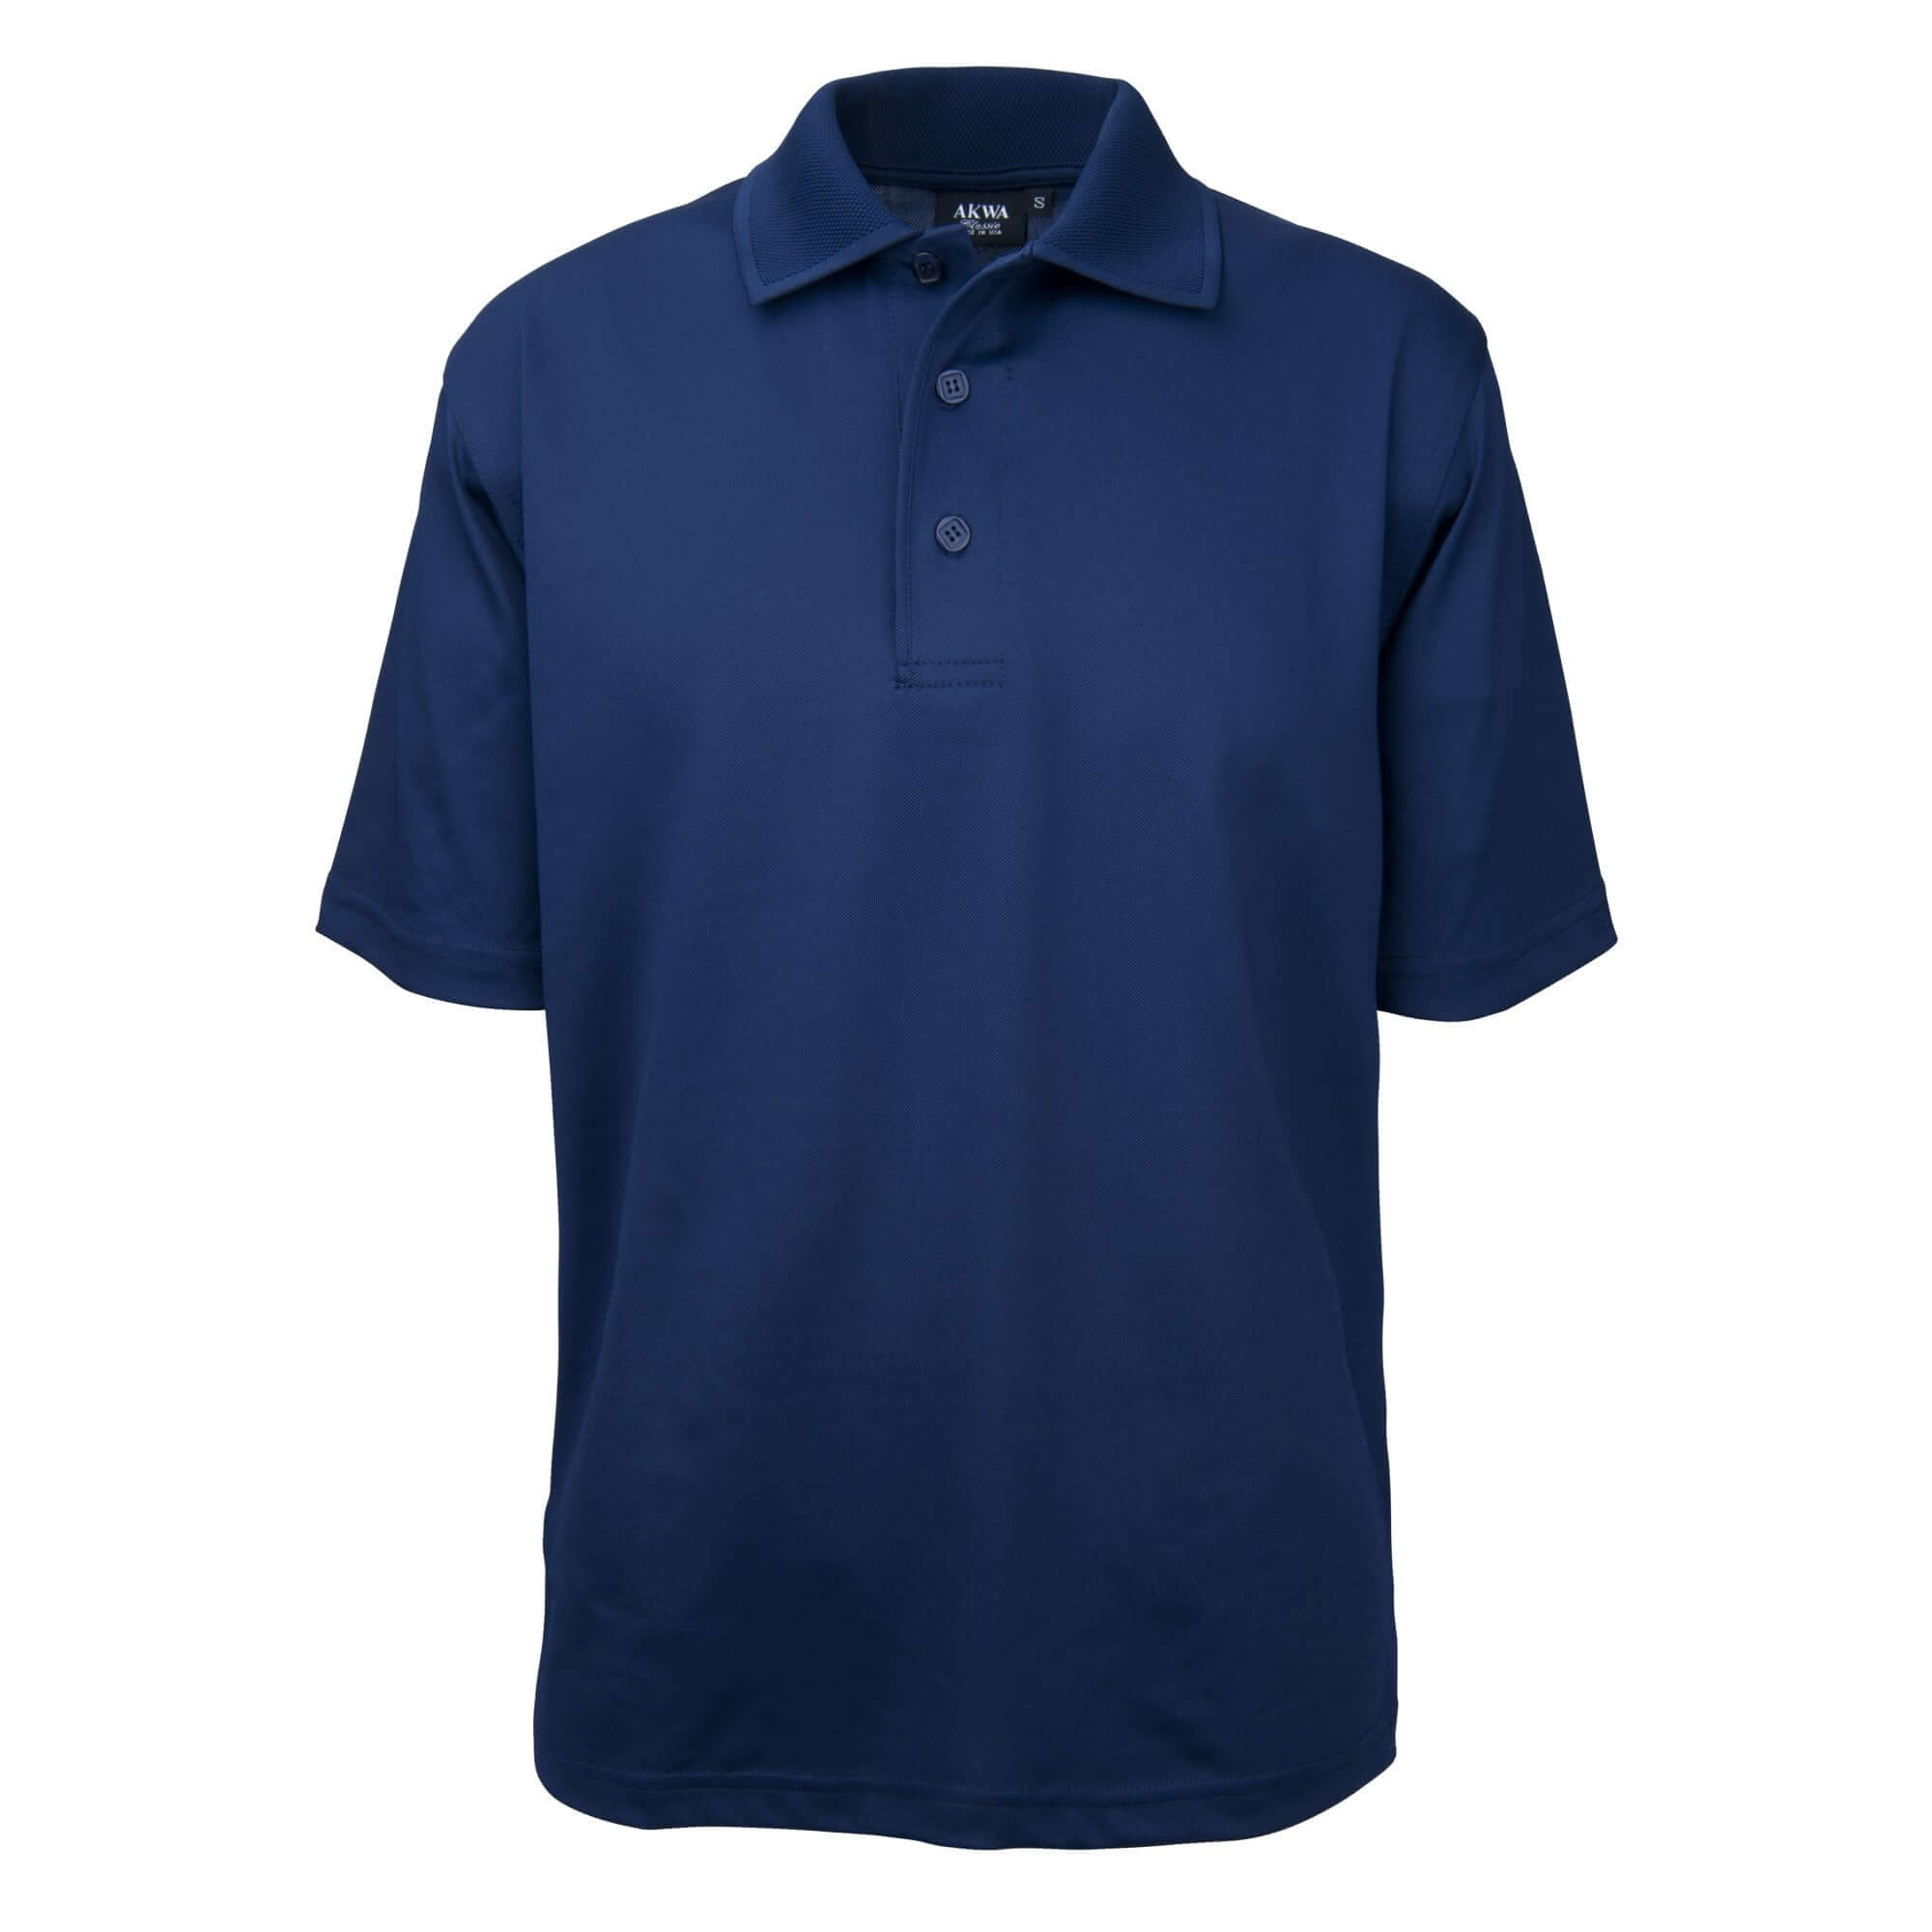 Men's Made in USA Tech Polo Shirt color_navy - the flag shirt